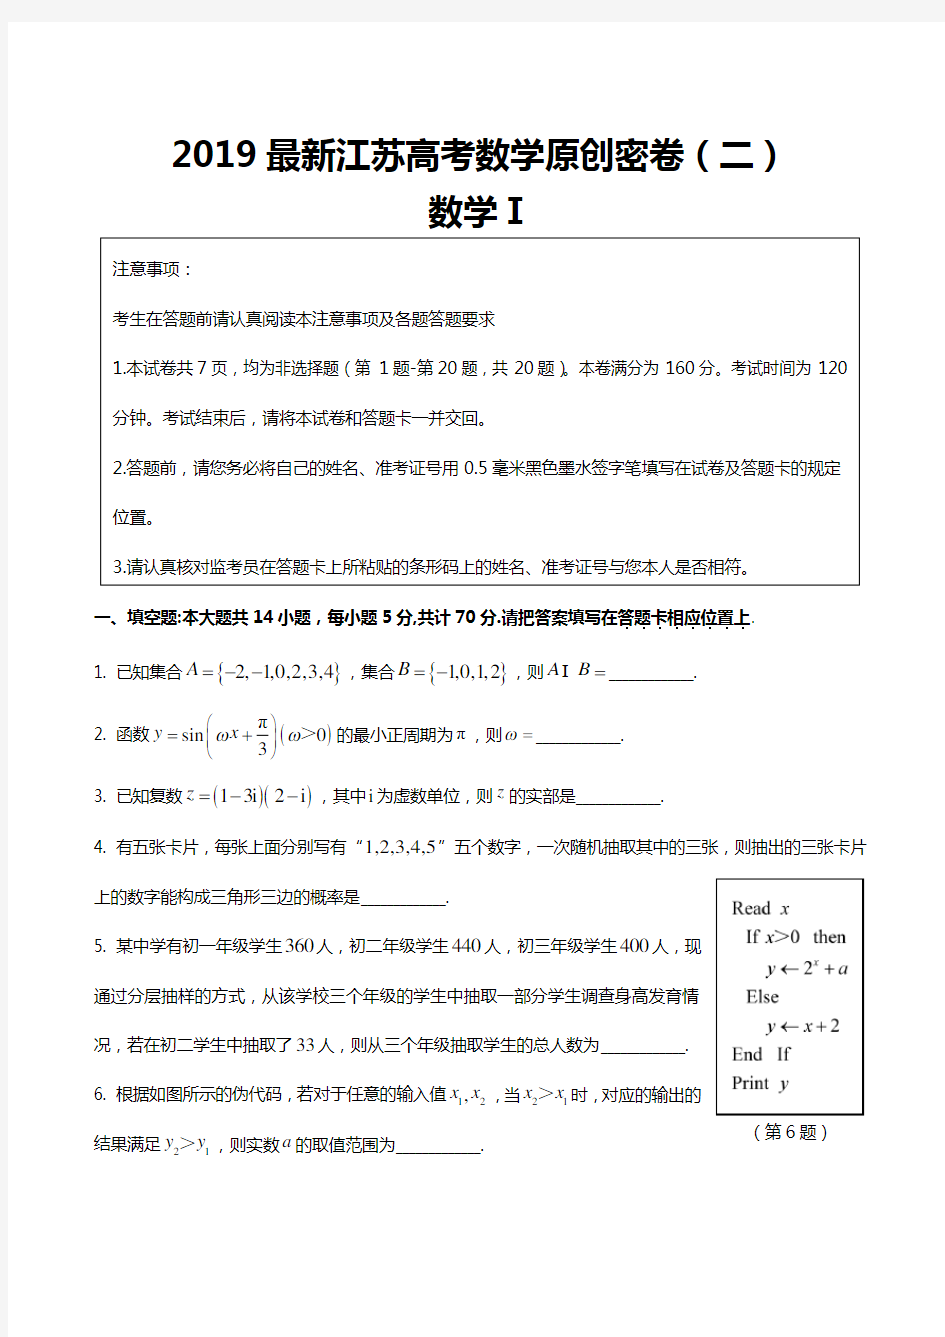 2019年最新江苏高考数学原创密卷(二)试题含附加题